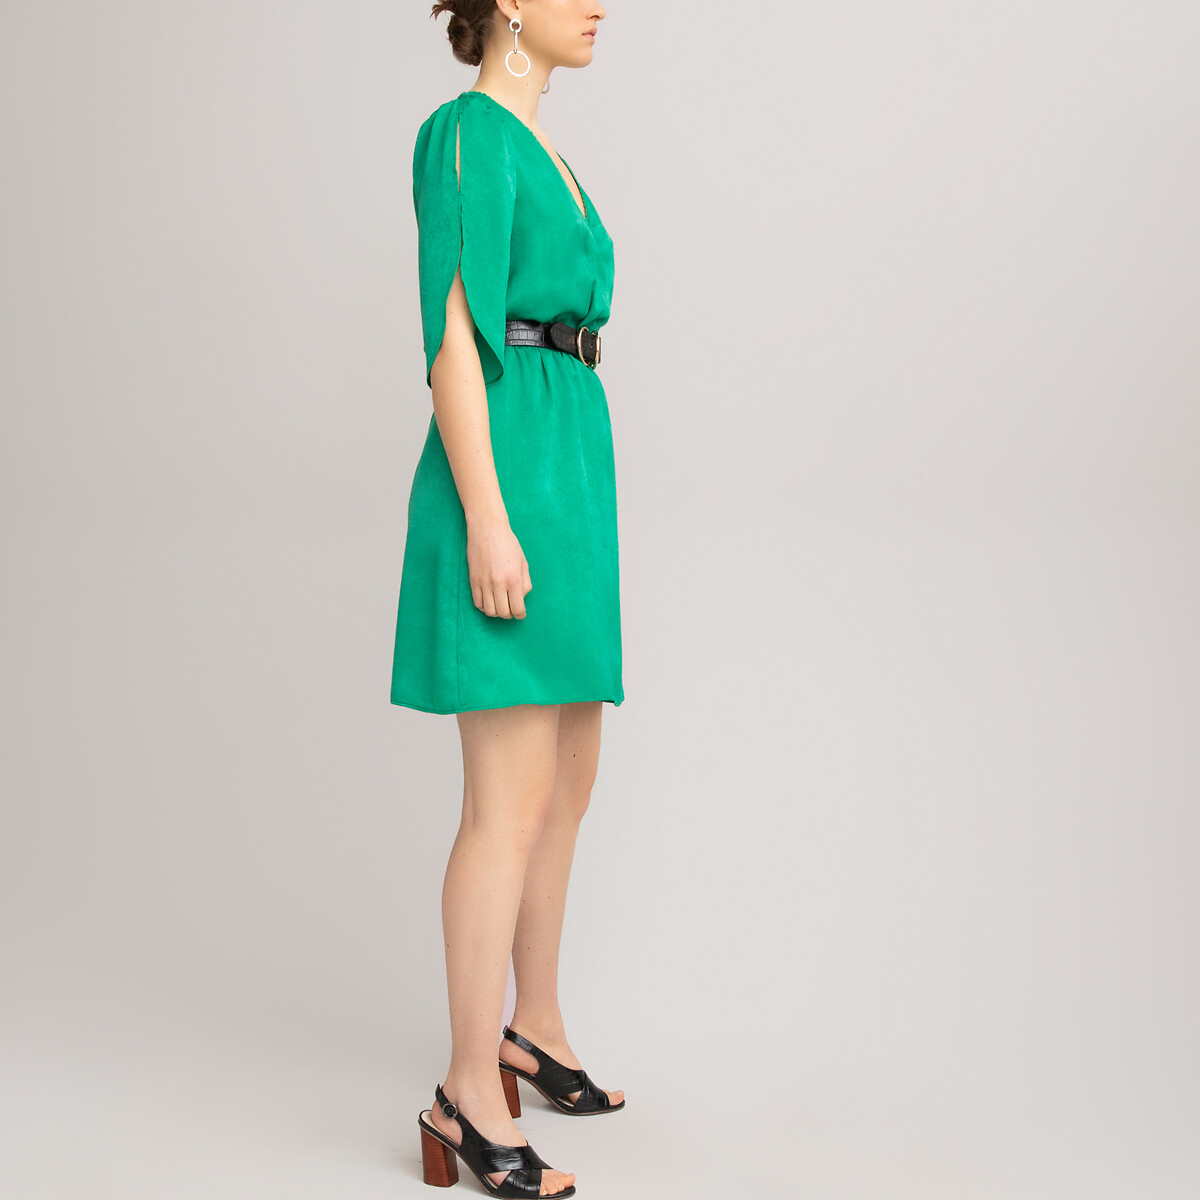 Платье LaRedoute Короткое с запахом короткие рукава 36 (FR) - 42 (RUS) зеленый, размер 36 (FR) - 42 (RUS) Короткое с запахом короткие рукава 36 (FR) - 42 (RUS) зеленый - фото 2